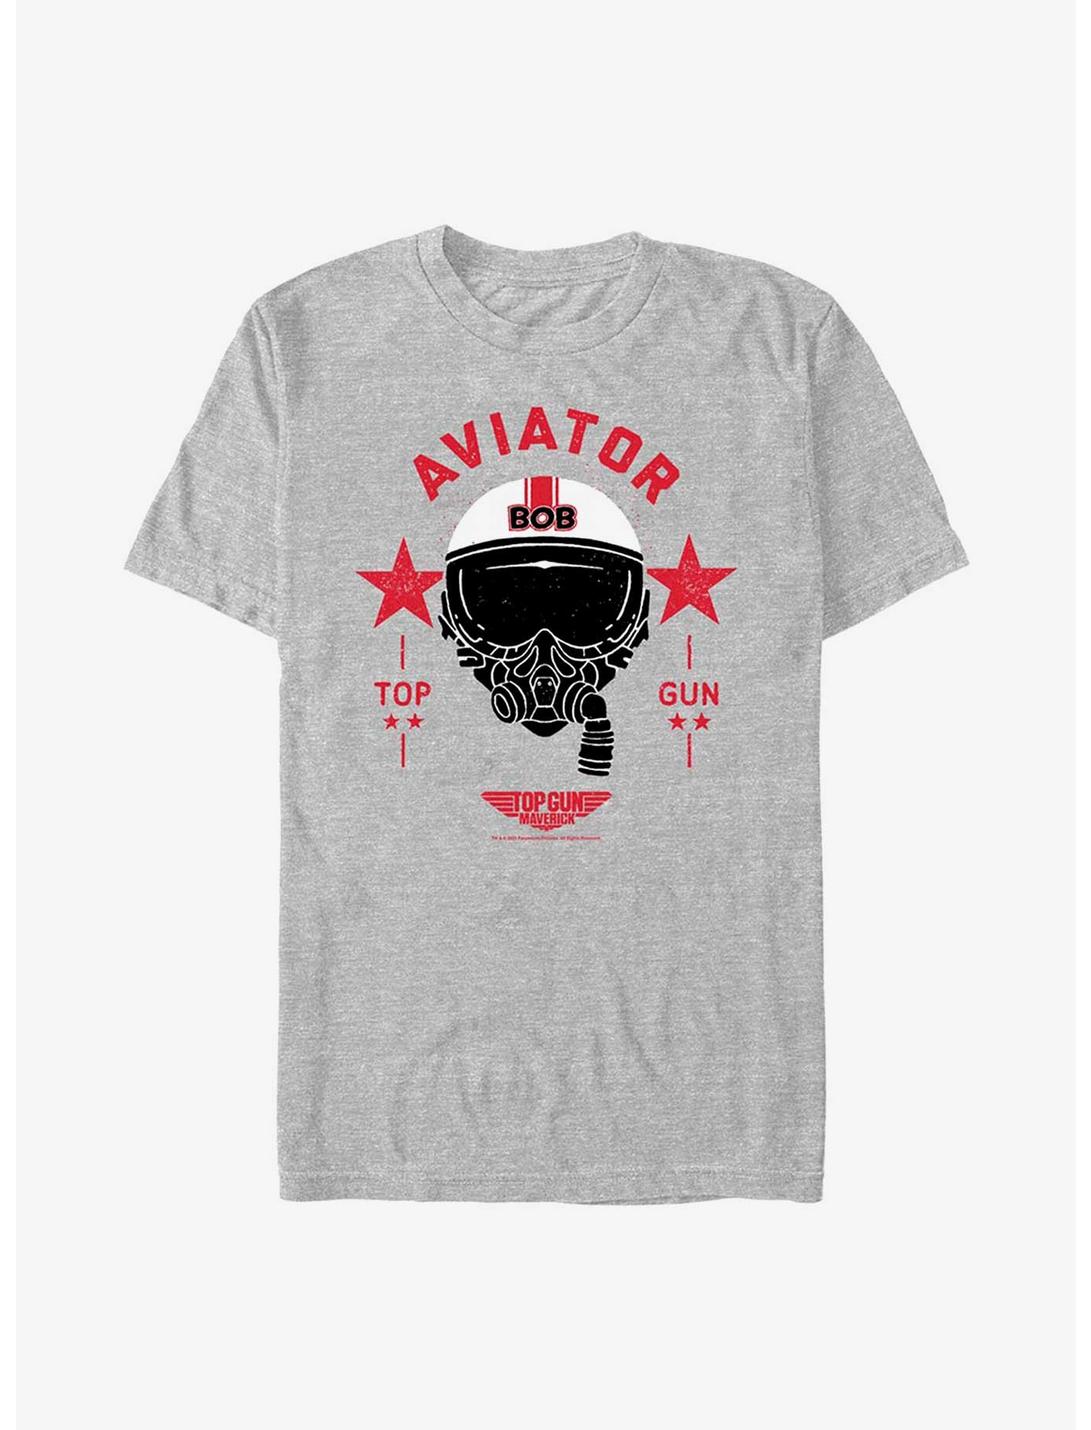 Top Gun Maverick Fighter Town T-Shirt - Shirtstore